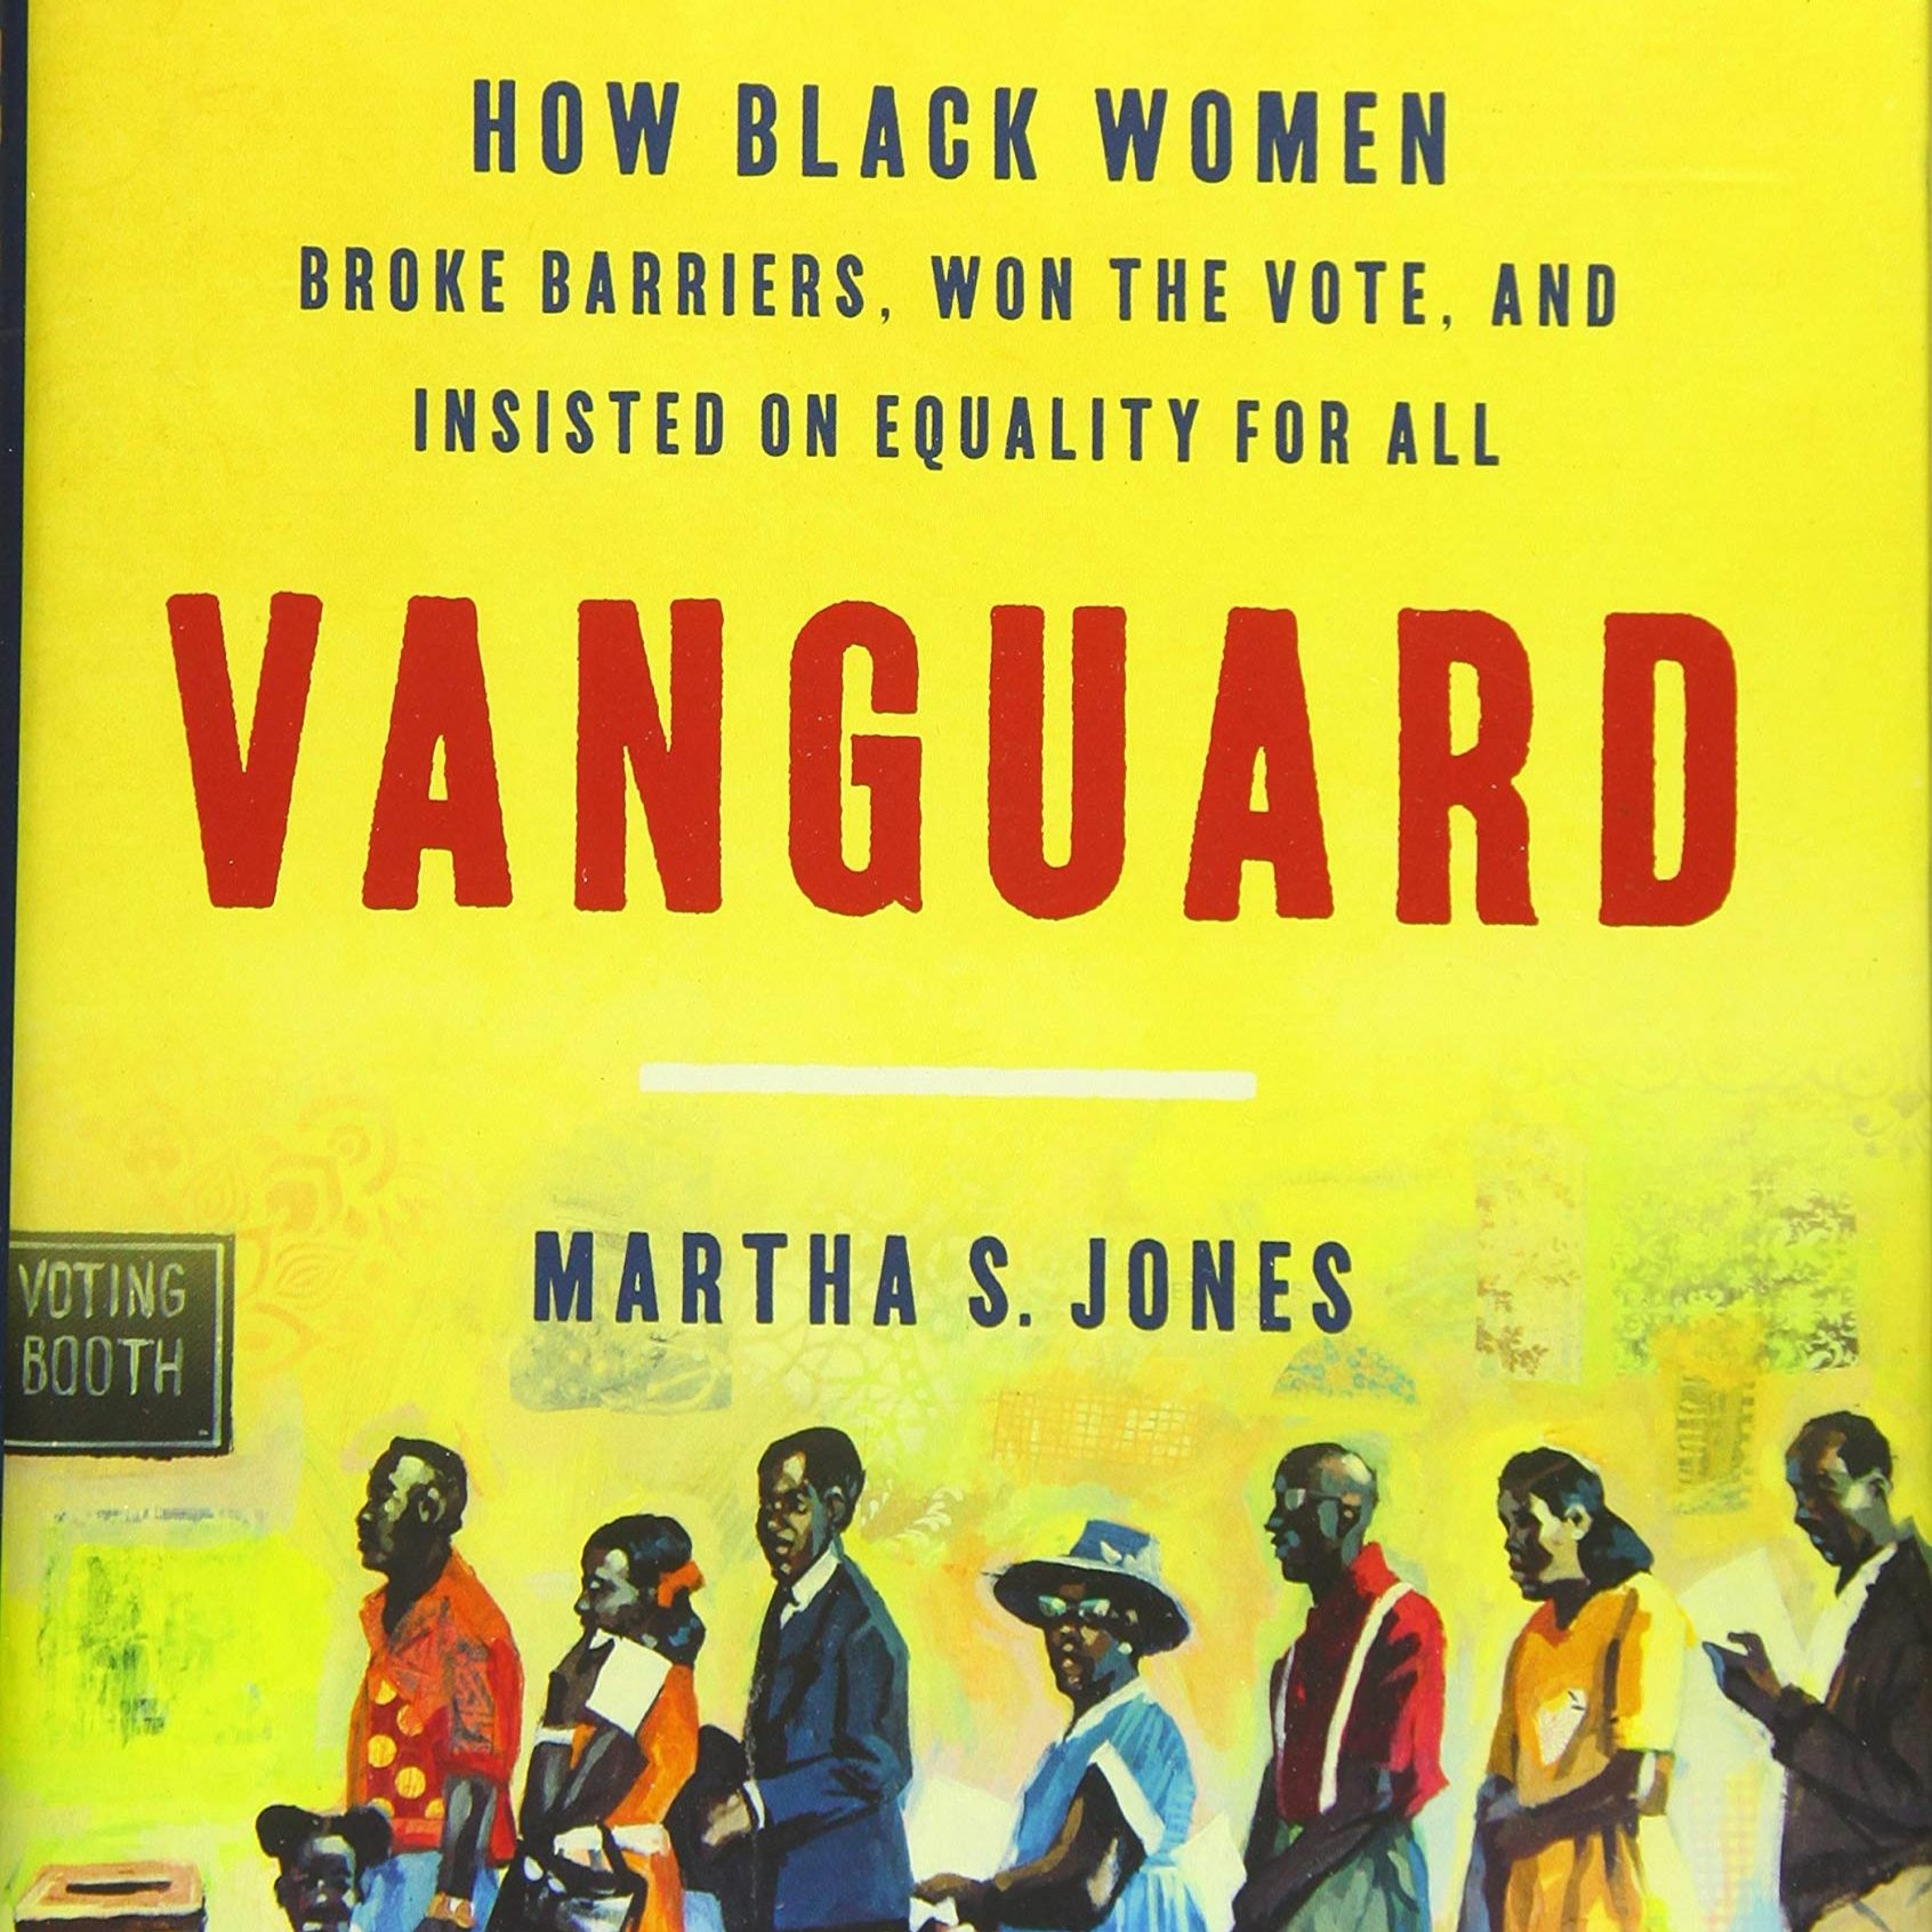 Martha S. Jones and Karen Holmes Ward, ”Vanguard: How Black Women Broke Barriers”